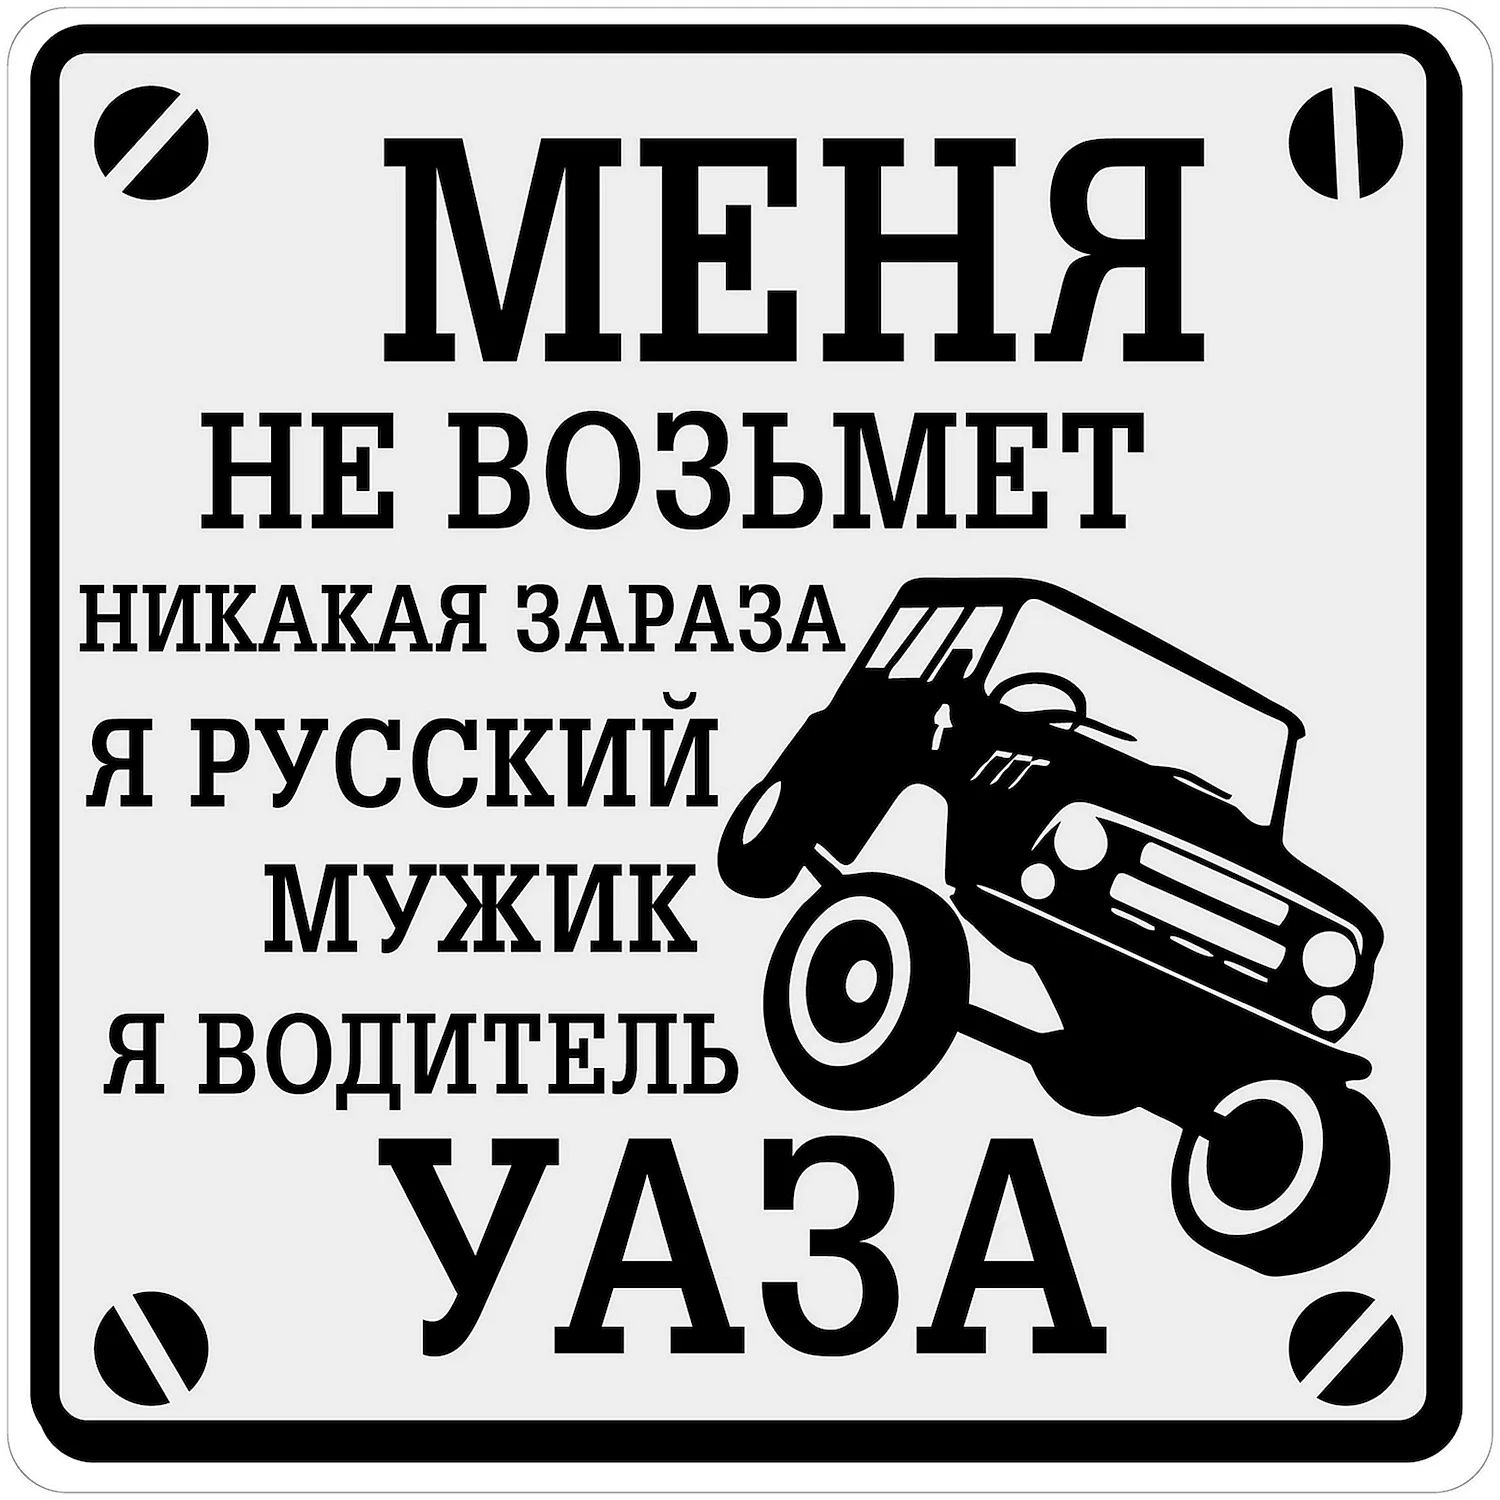 Наклейка водитель УАЗА